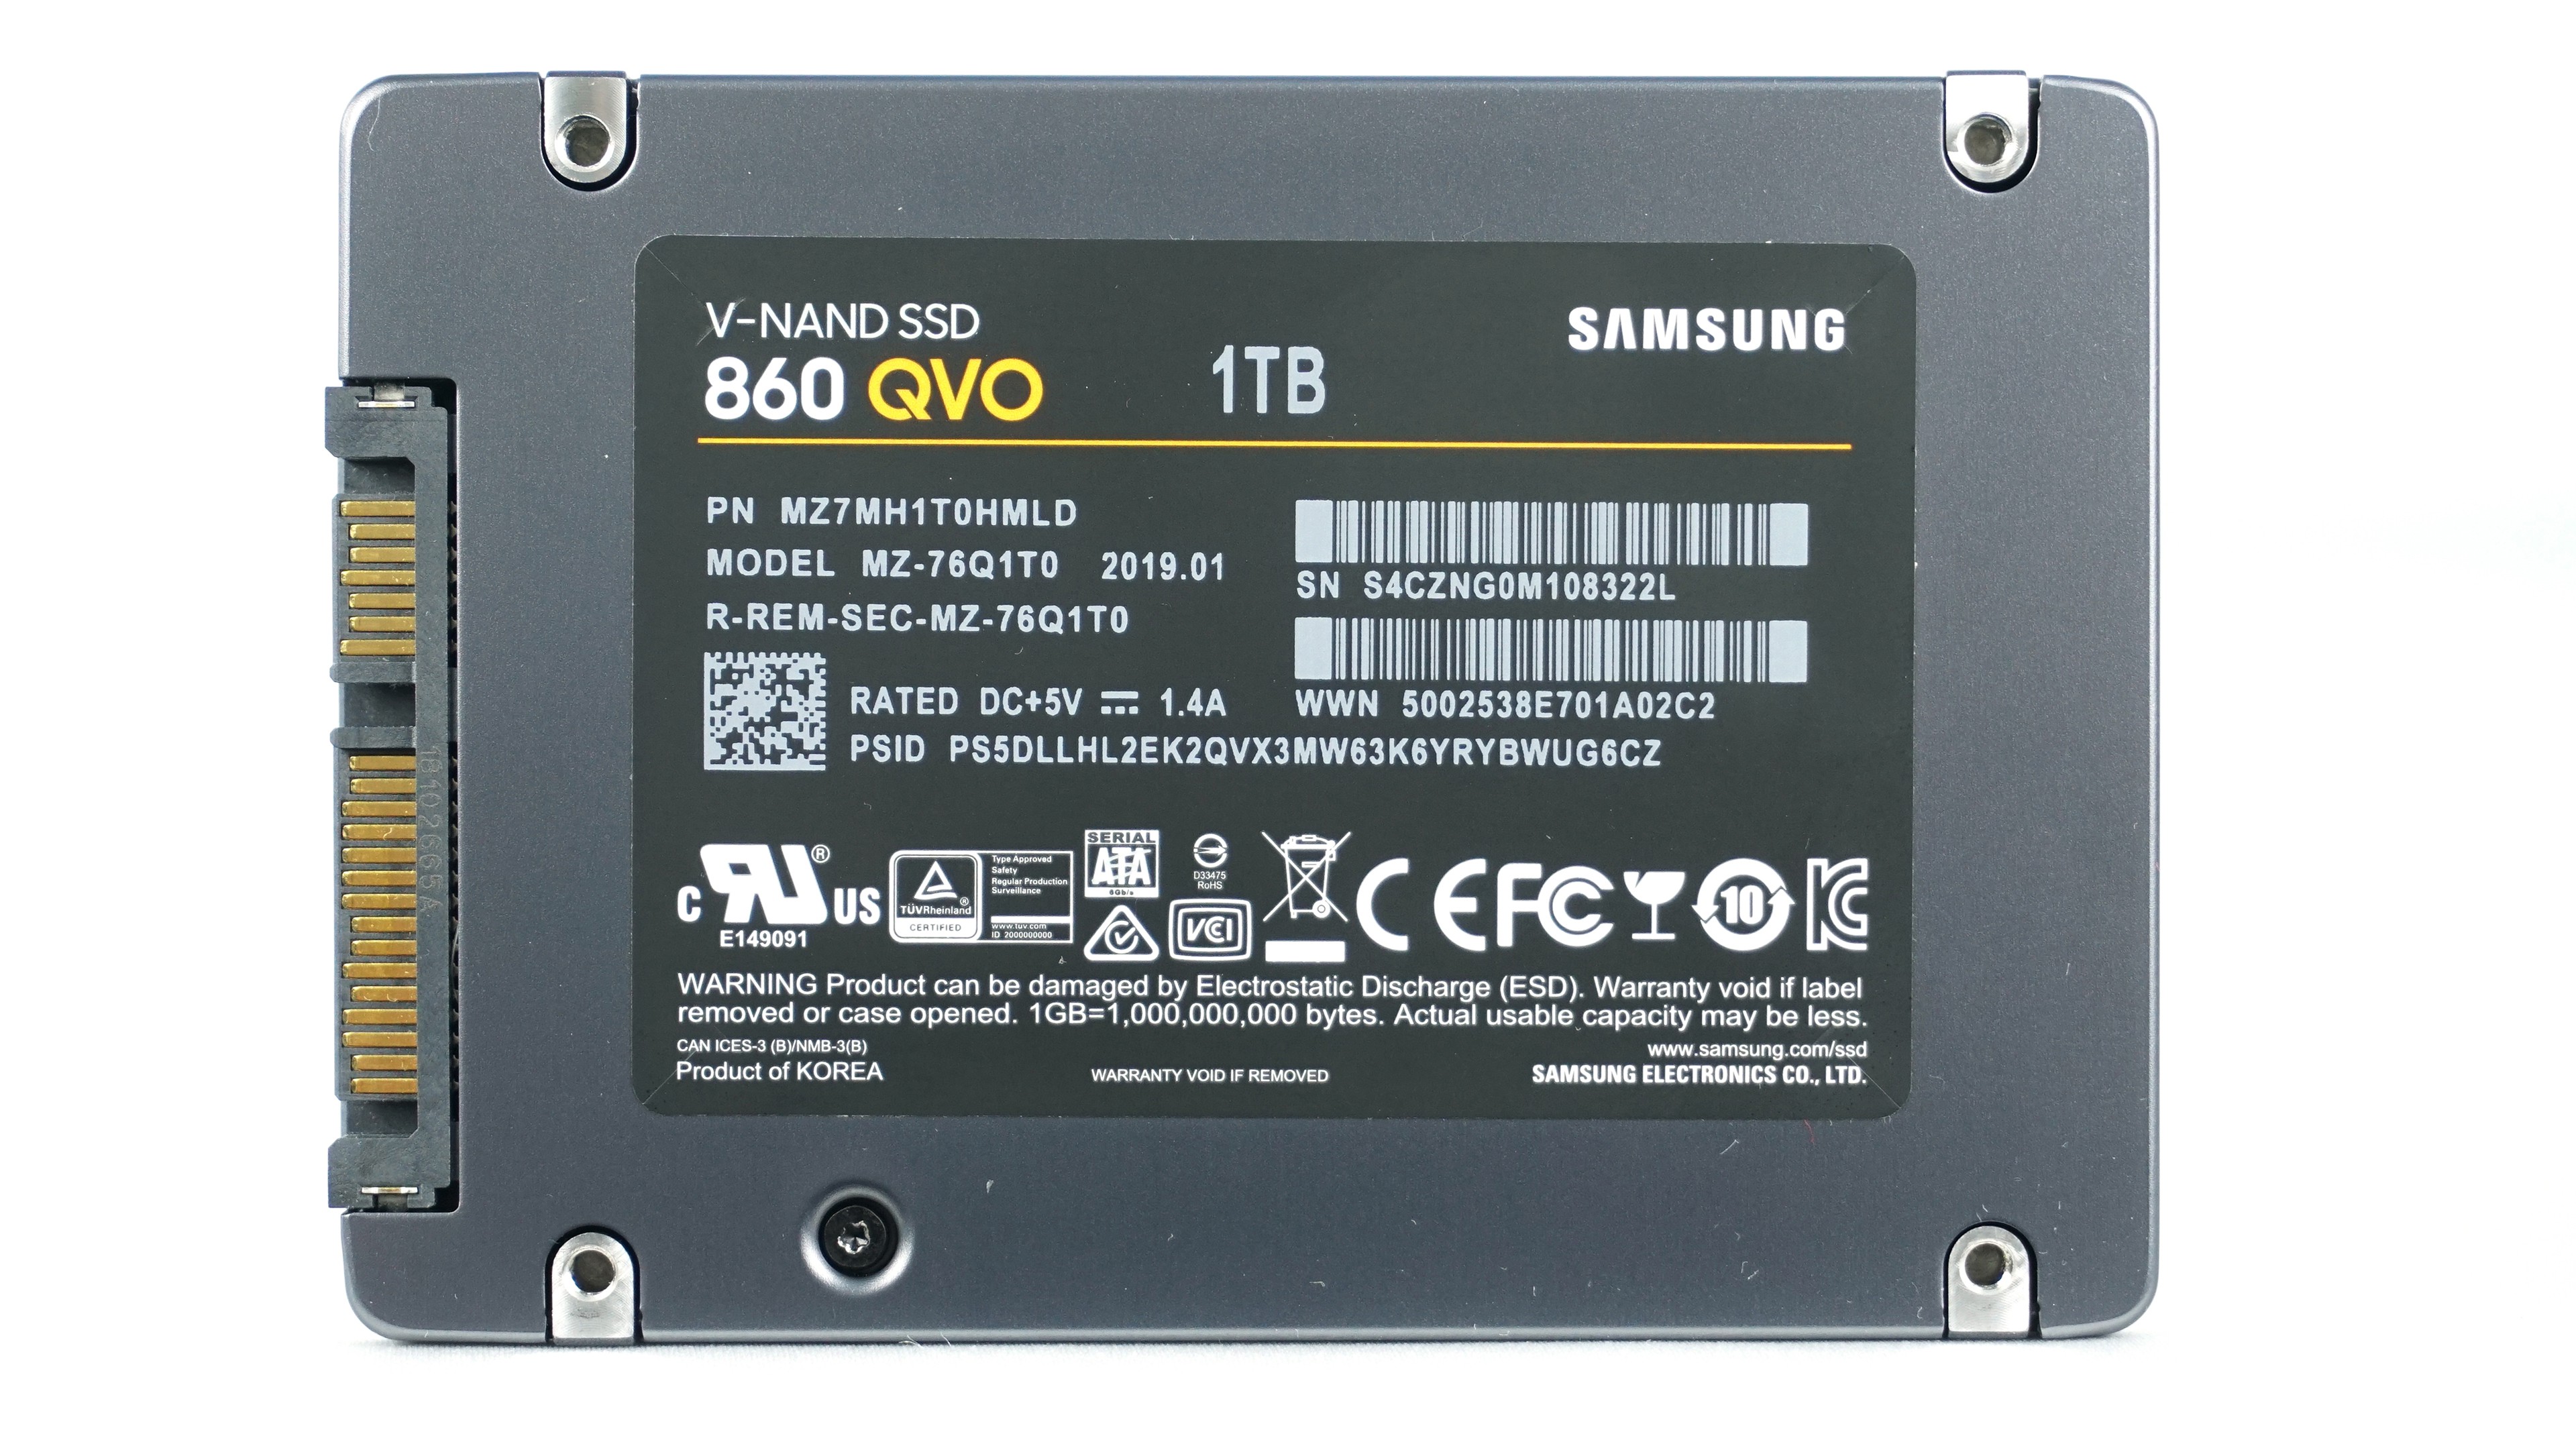 Recenzia Samsung 860 QVO: Veľké SSD, koniec HDD? - Page 5 of 6